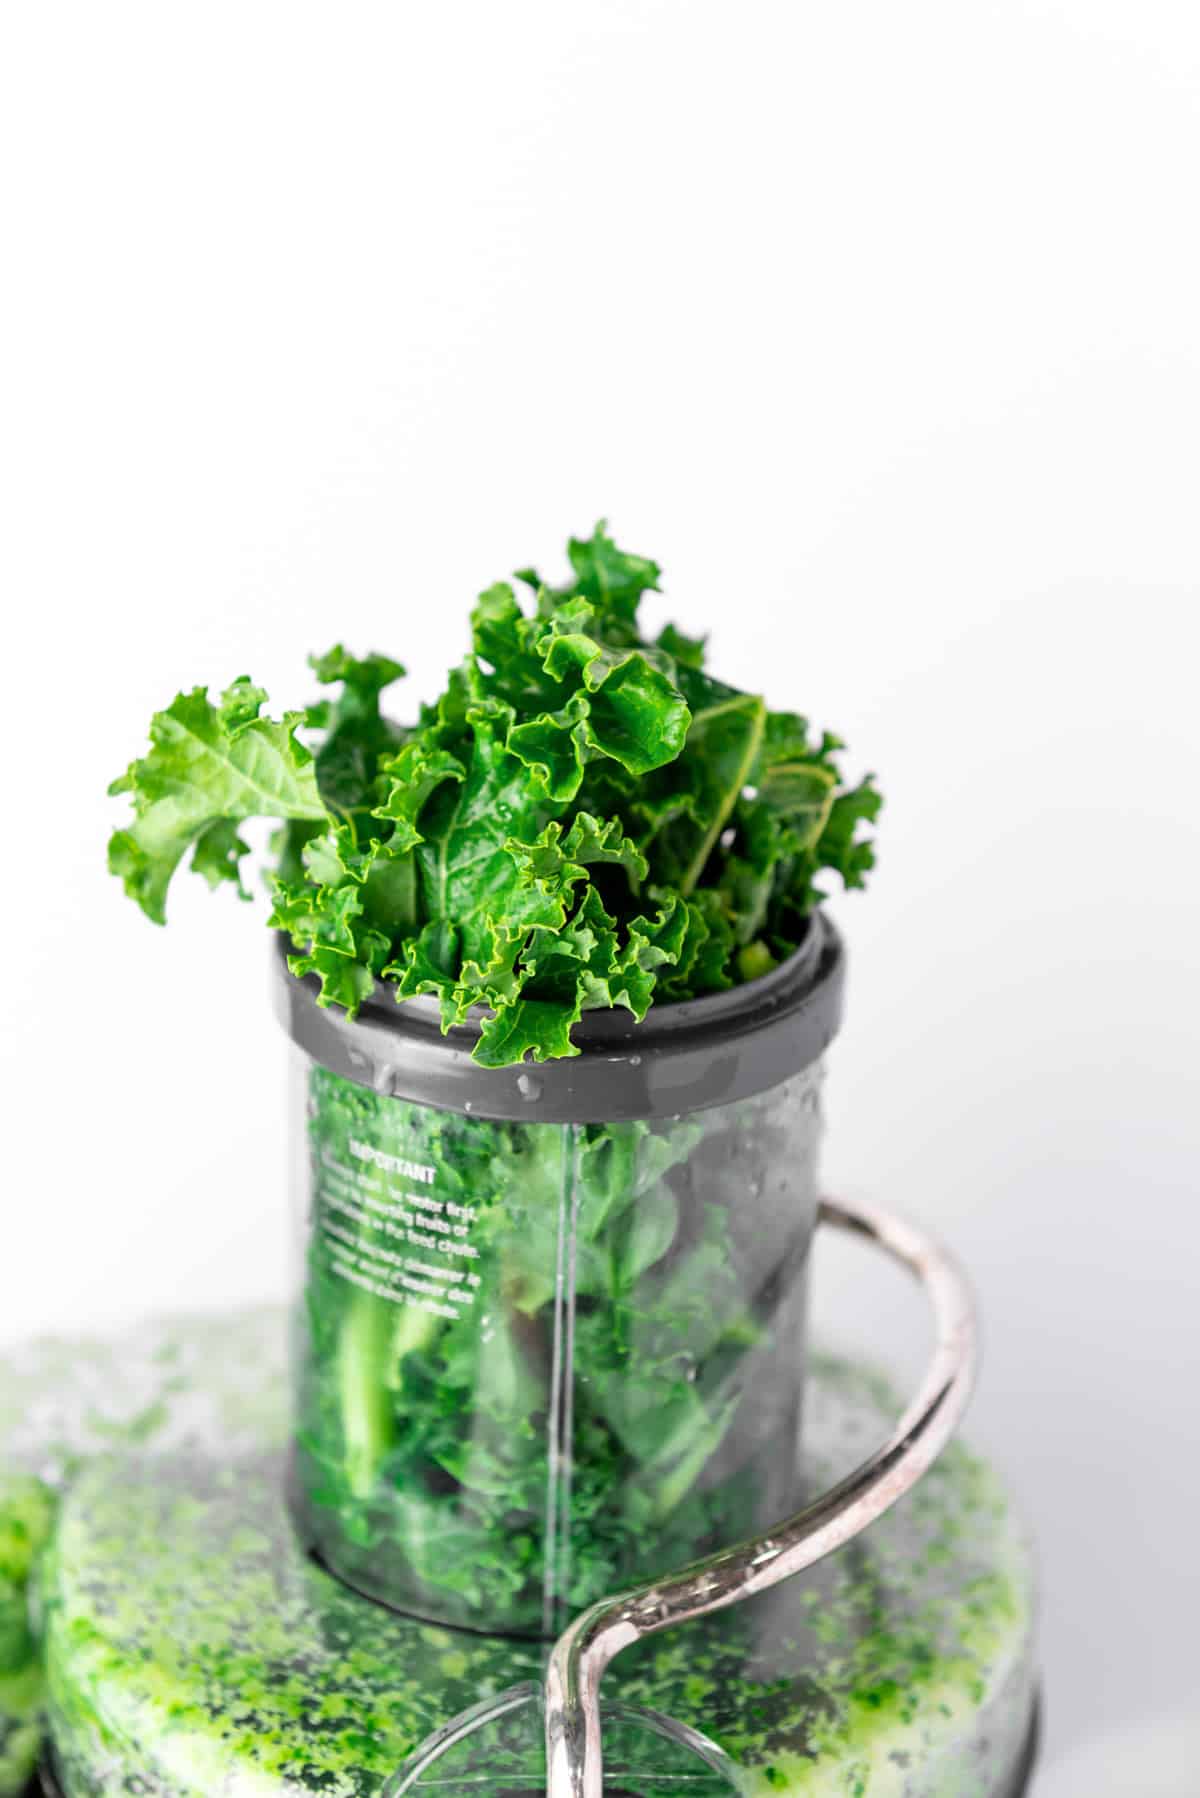 kale leaves in juicer